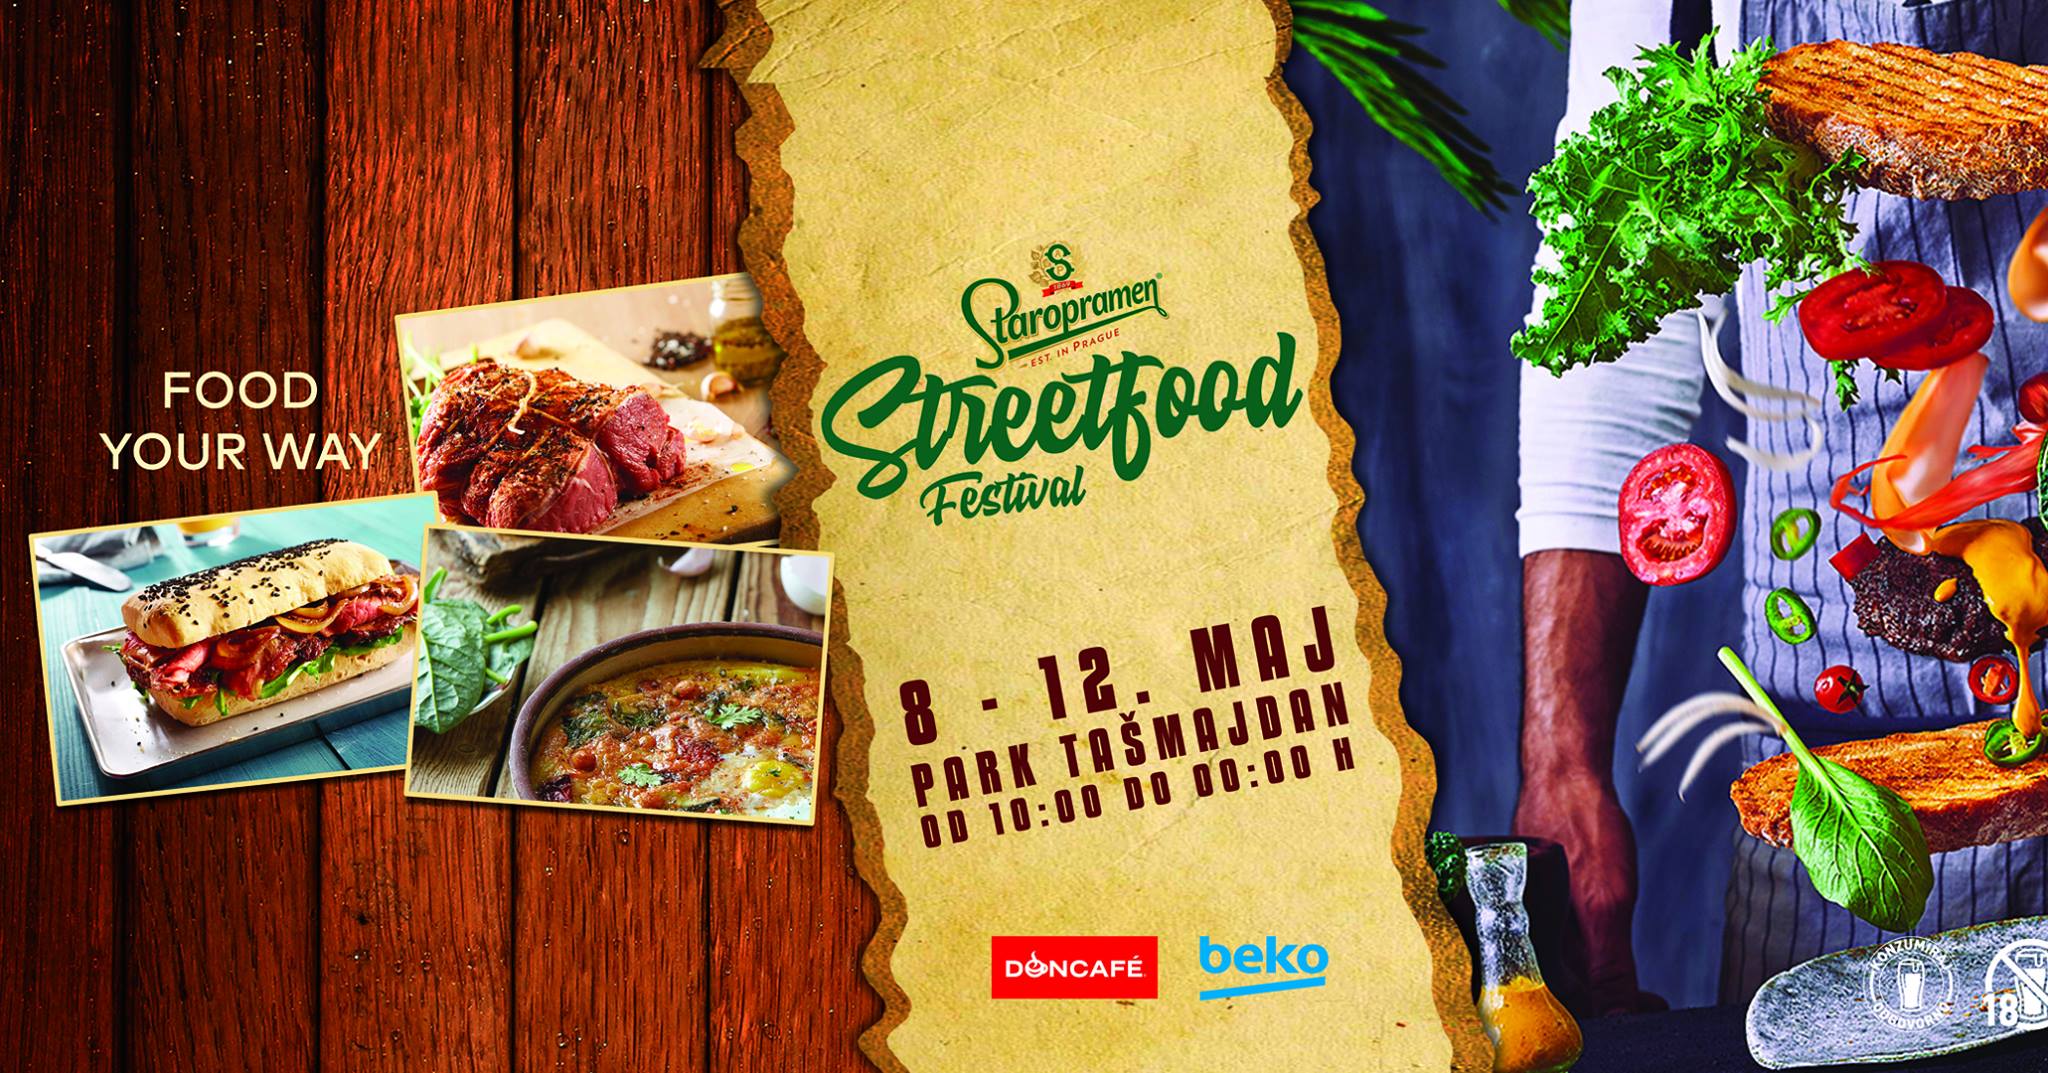 Staropramen Street Food Festival 08 – 12.05.2019. Tasmajdan